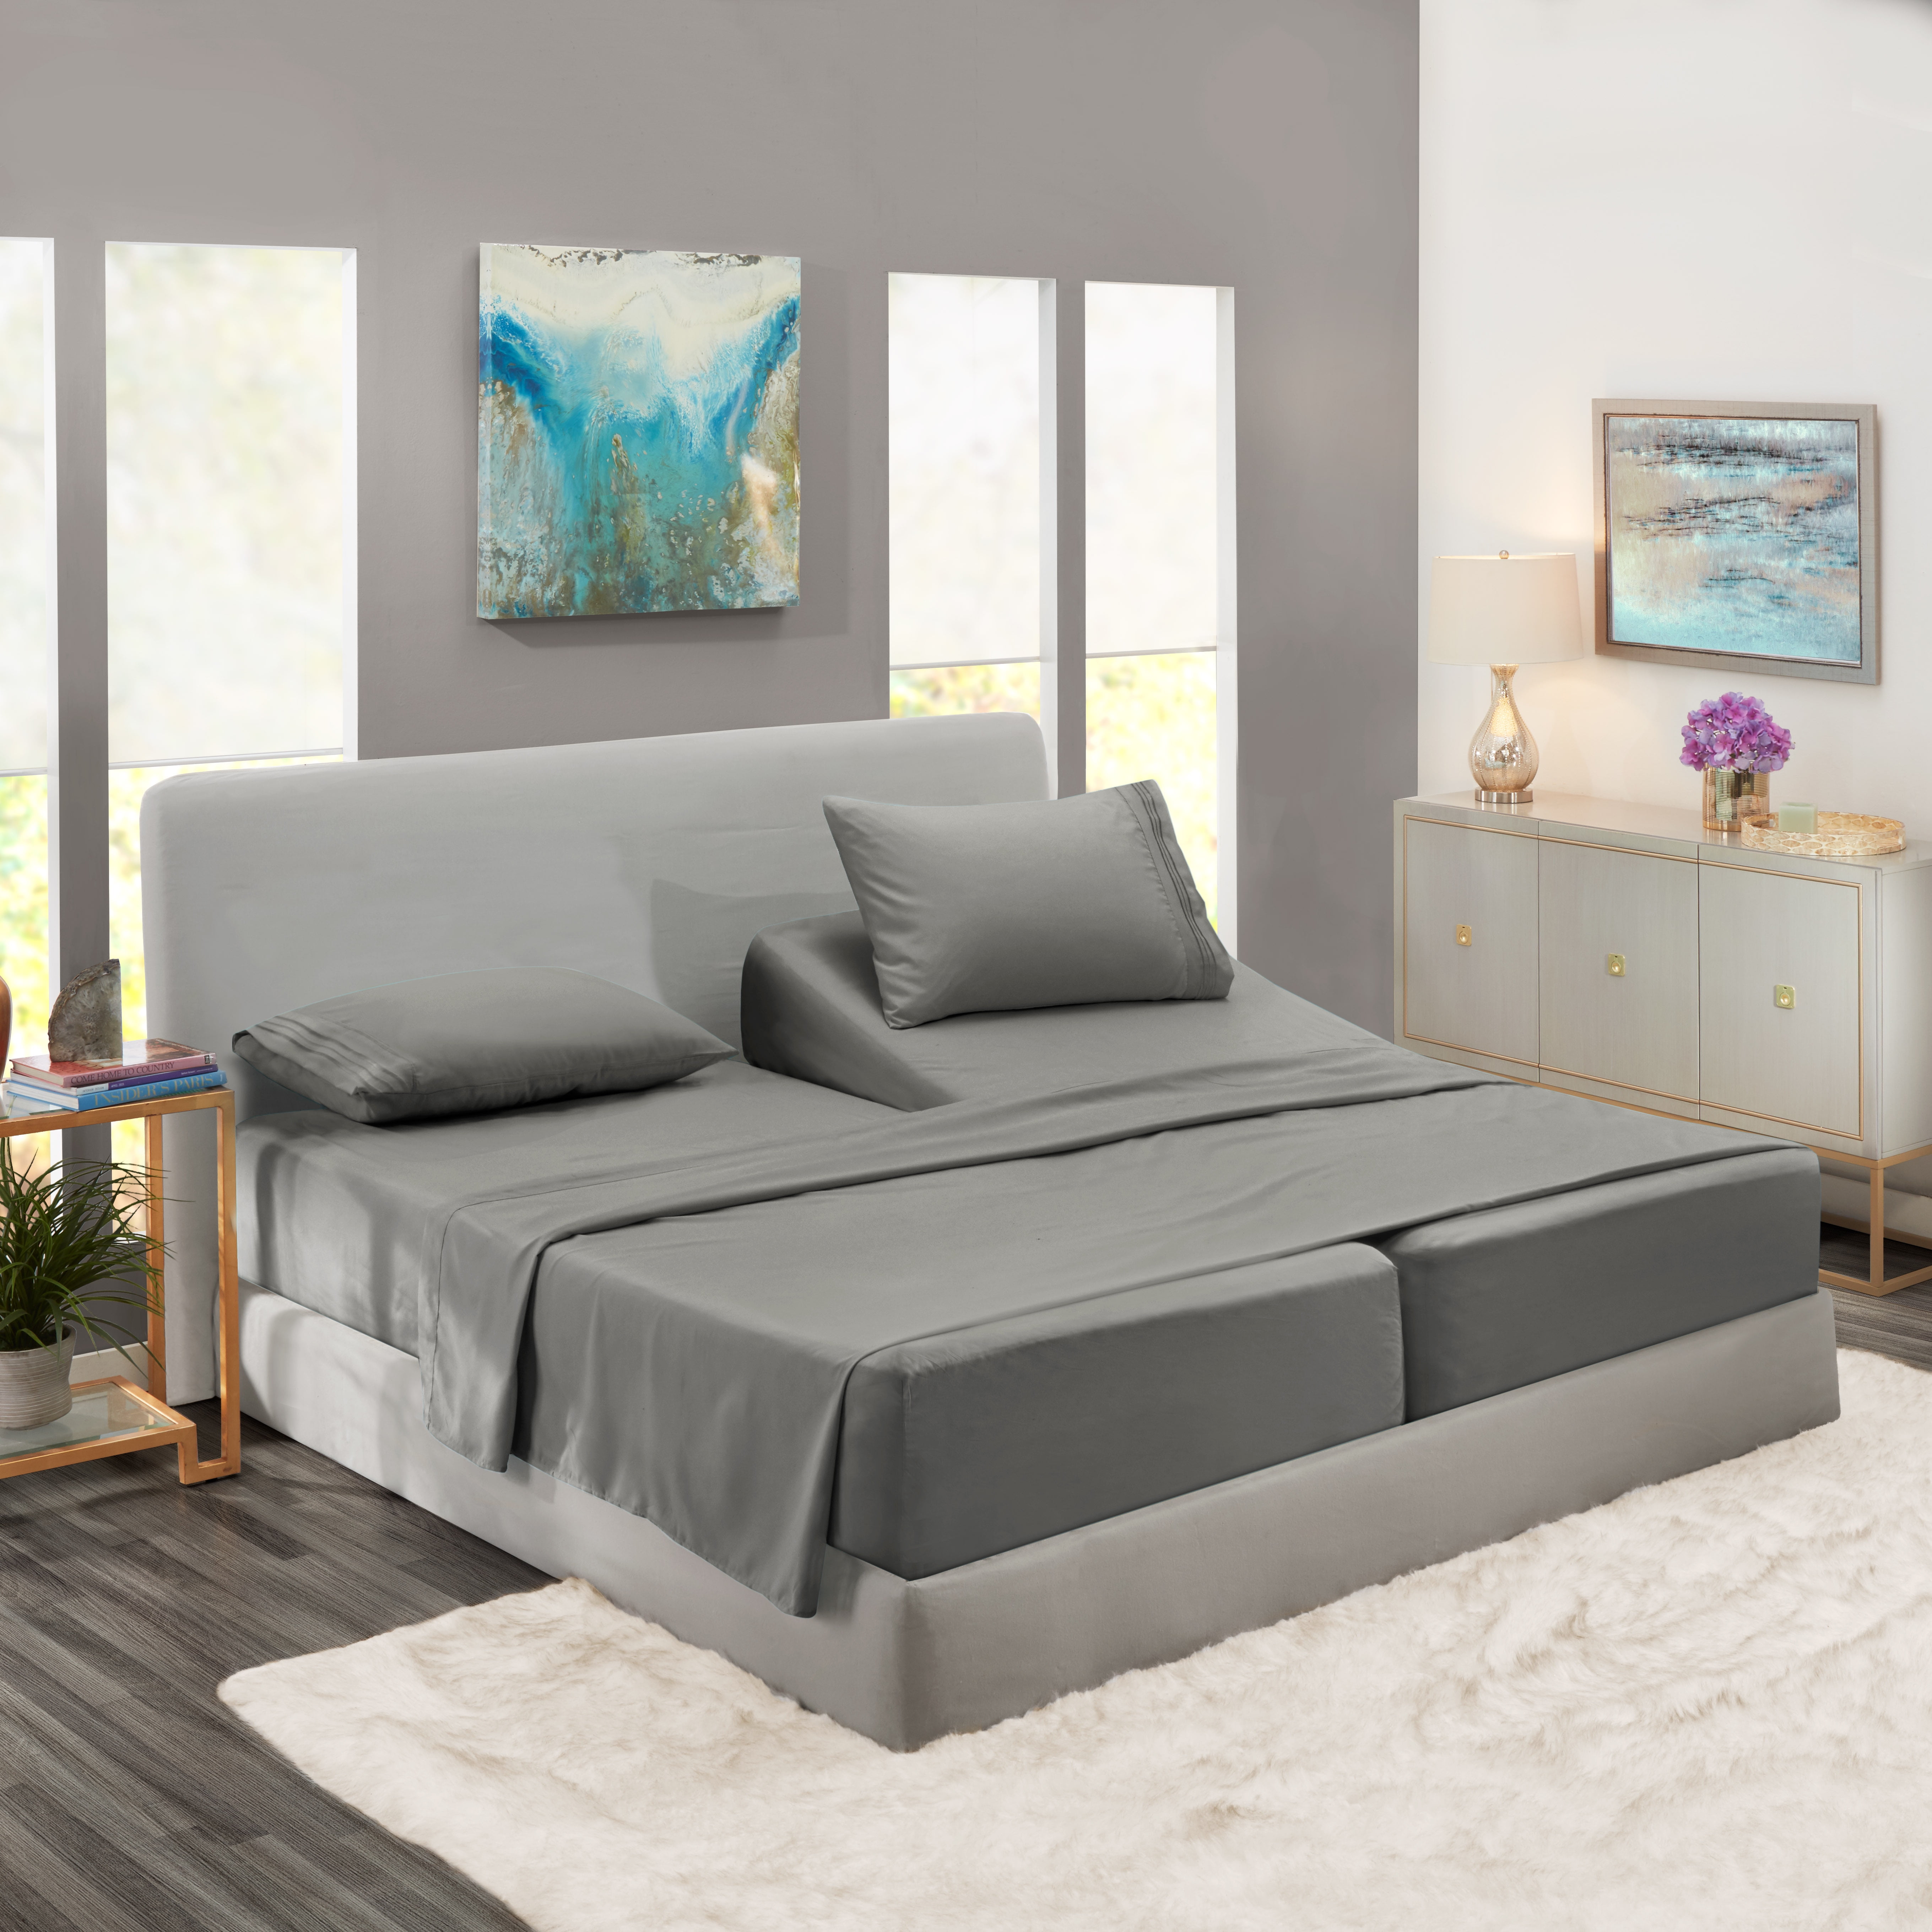 Split King Bed Sheets Set for Adjustable Beds, Deep Pocket 5 Piece